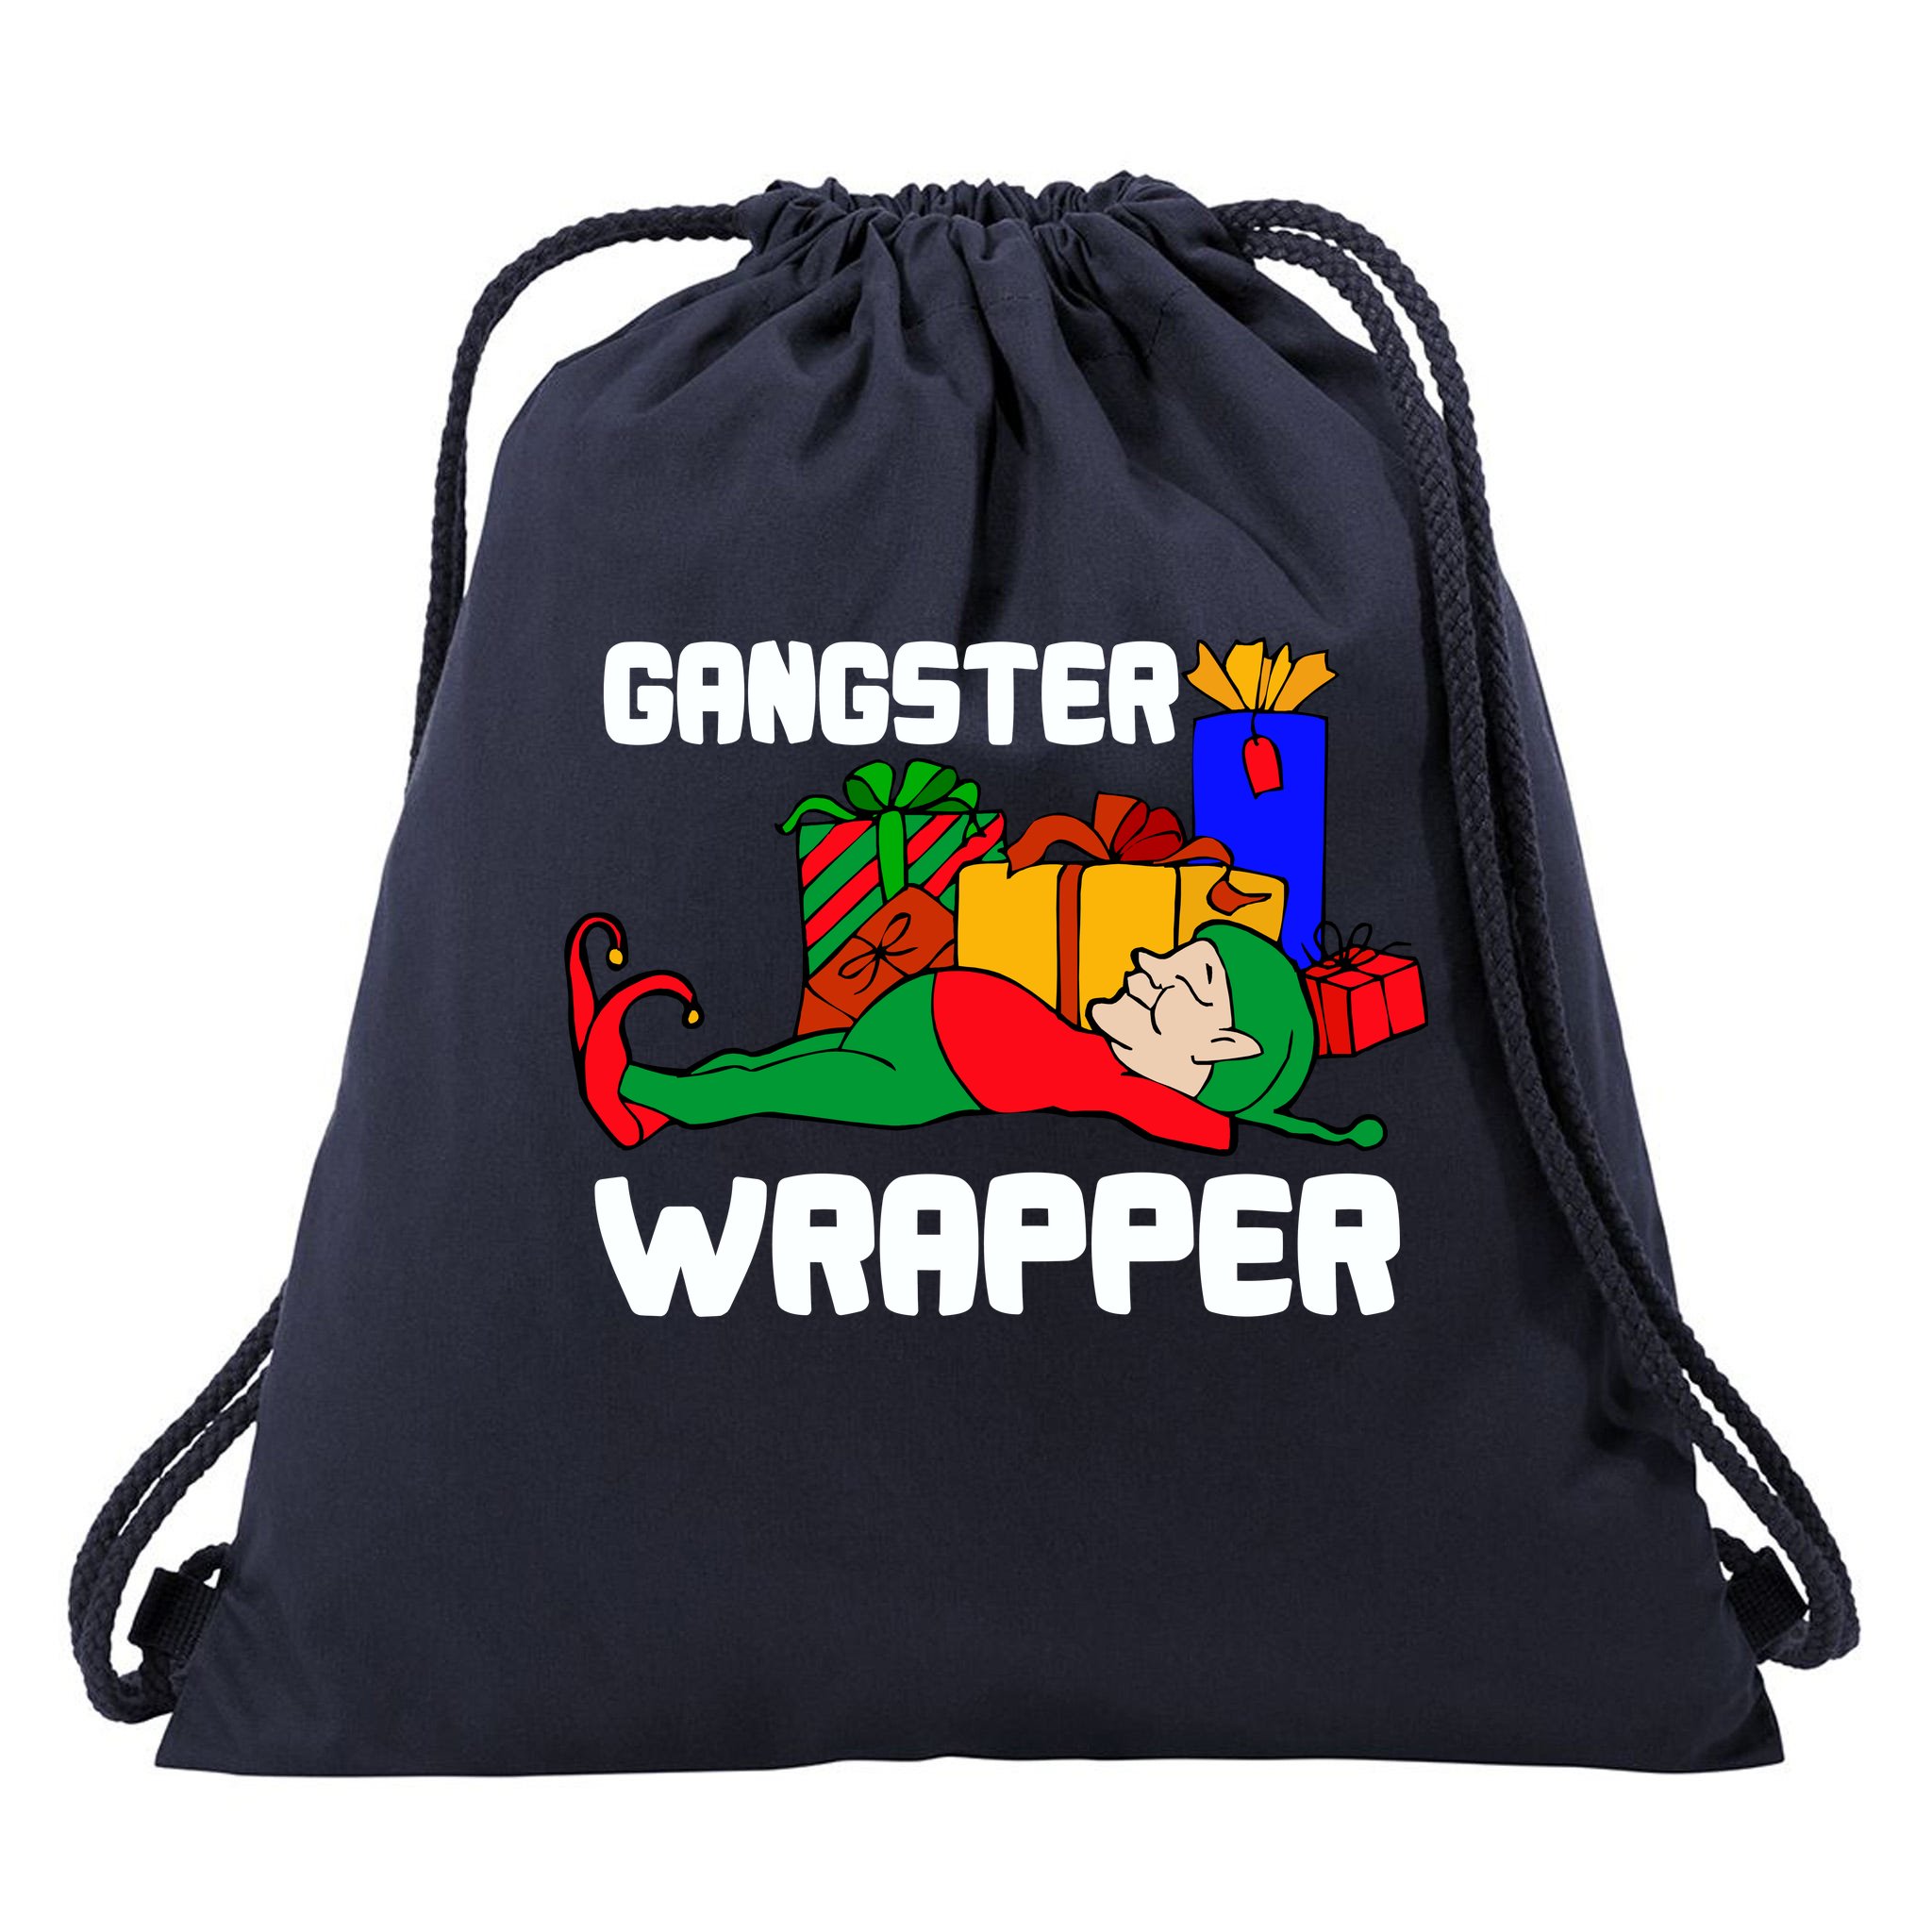 AL CAPONE ORIGINAL GANGSTER - Small Word Art Tote Bag – LA Pop Art